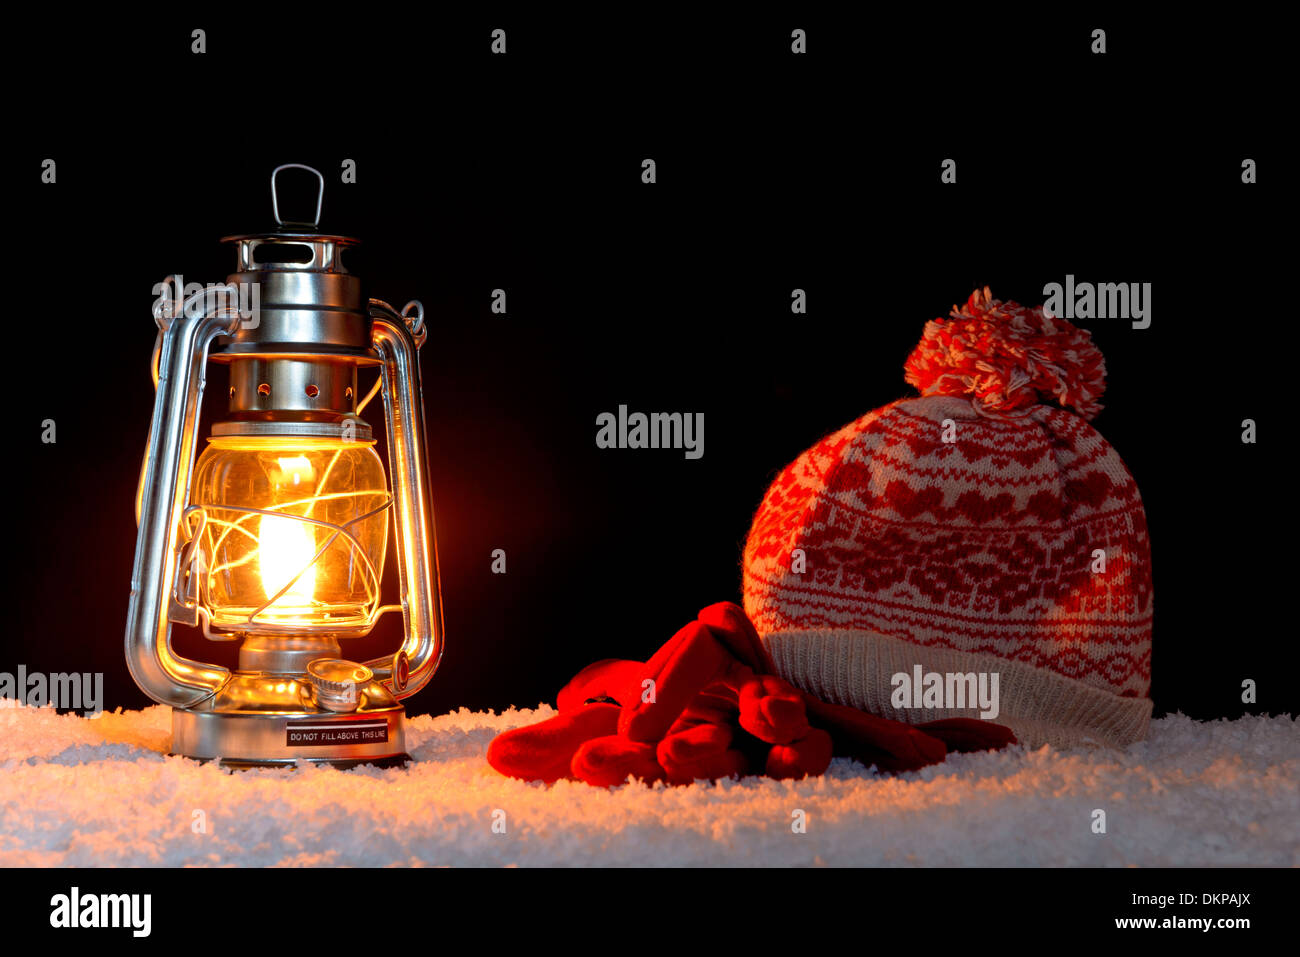 Une lanterne à huile sur la neige avec un bobble hat et gants, fond noir. Banque D'Images